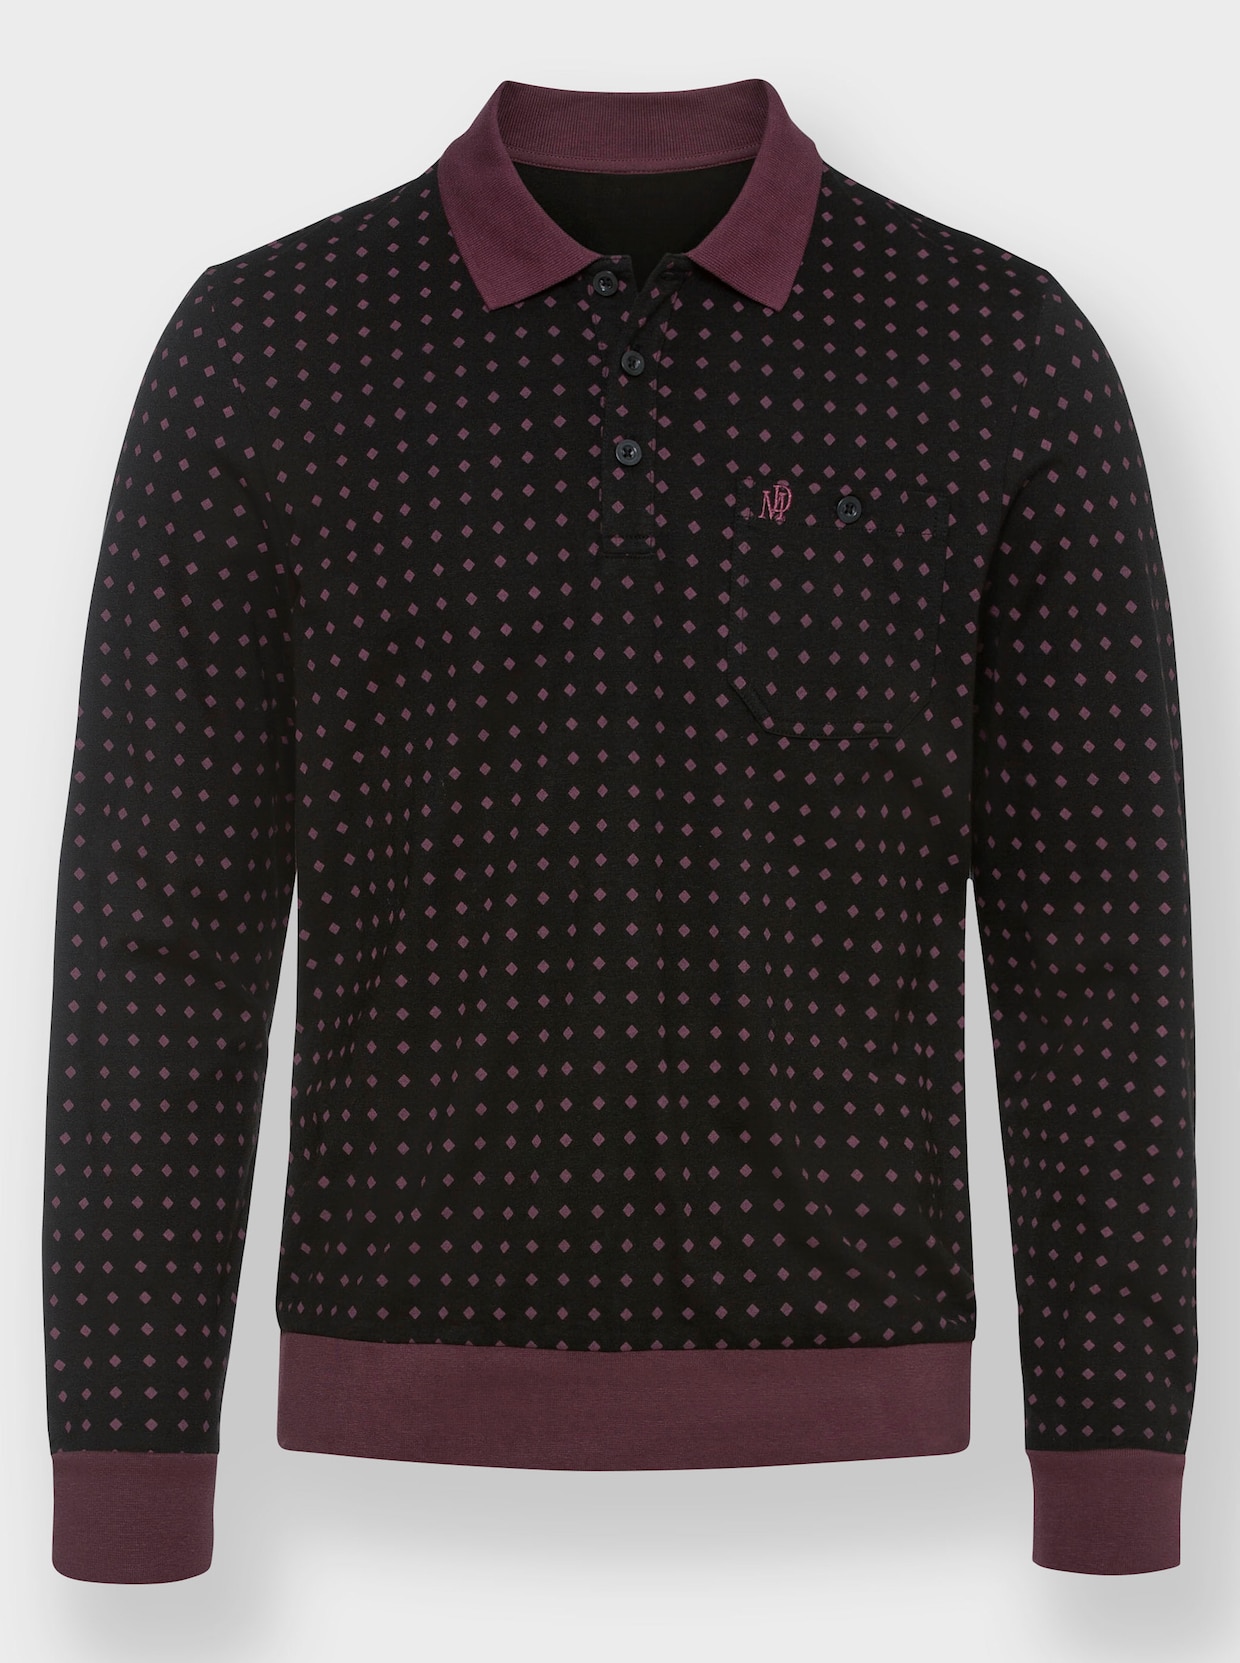 Marco Donati Langarm-Poloshirt - schwarz-burgund-gemustert